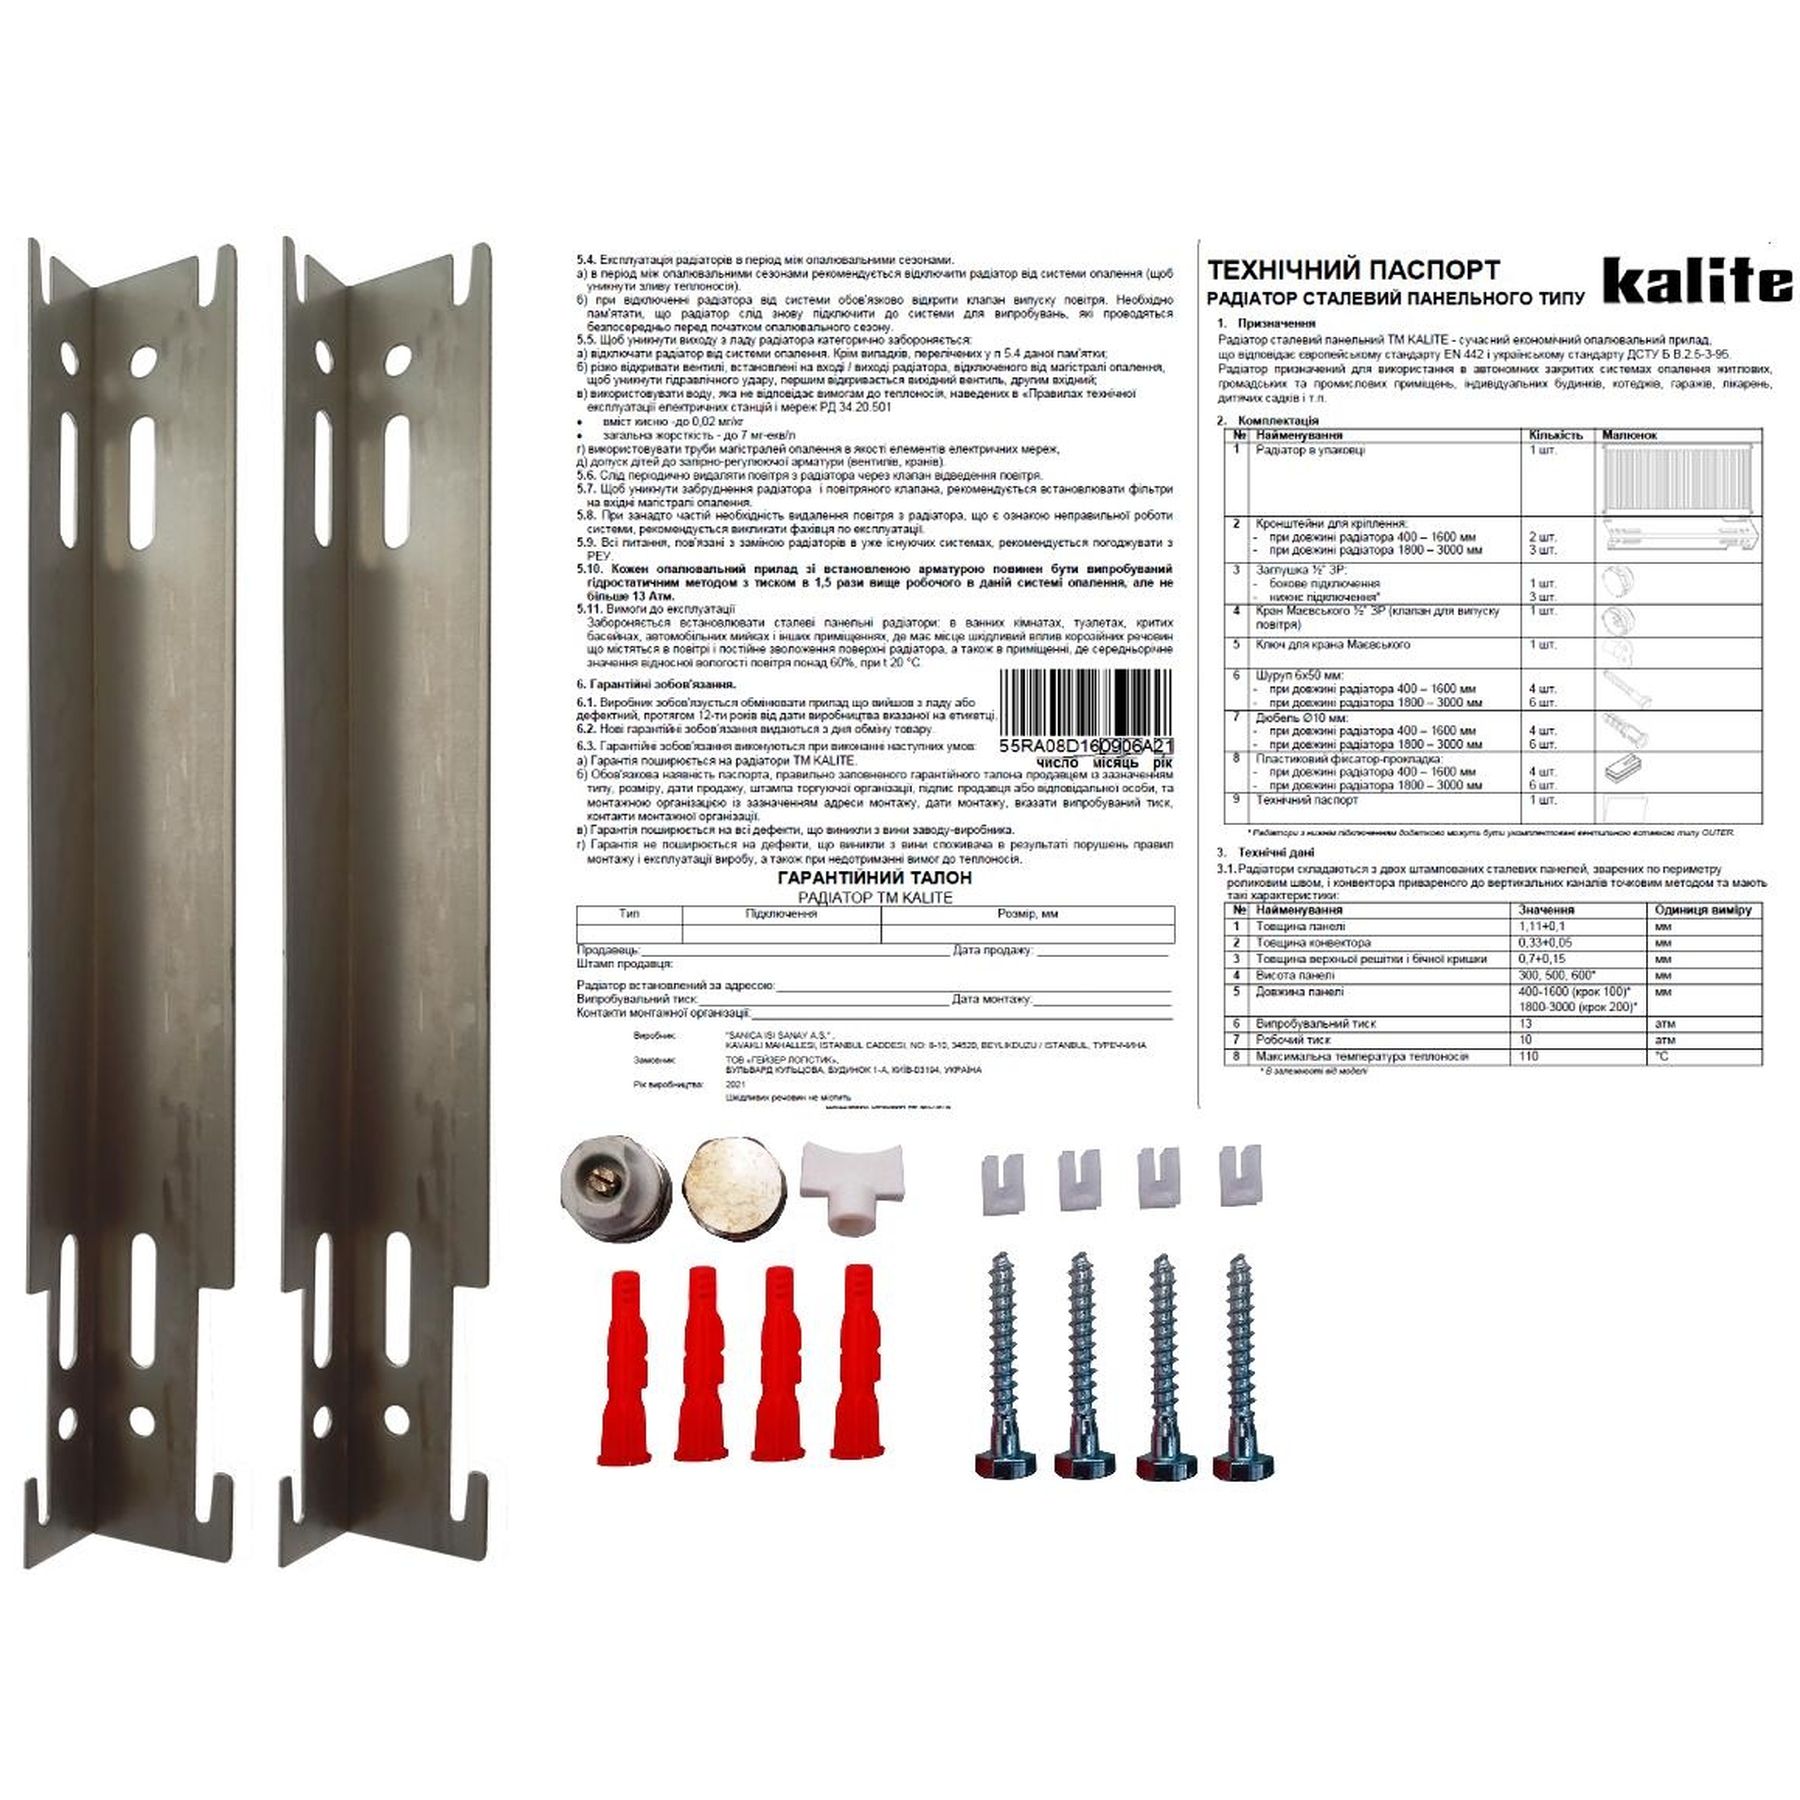 Радиатор для отопления Kalite 11 бок 500х1600 цена 4026 грн - фотография 2